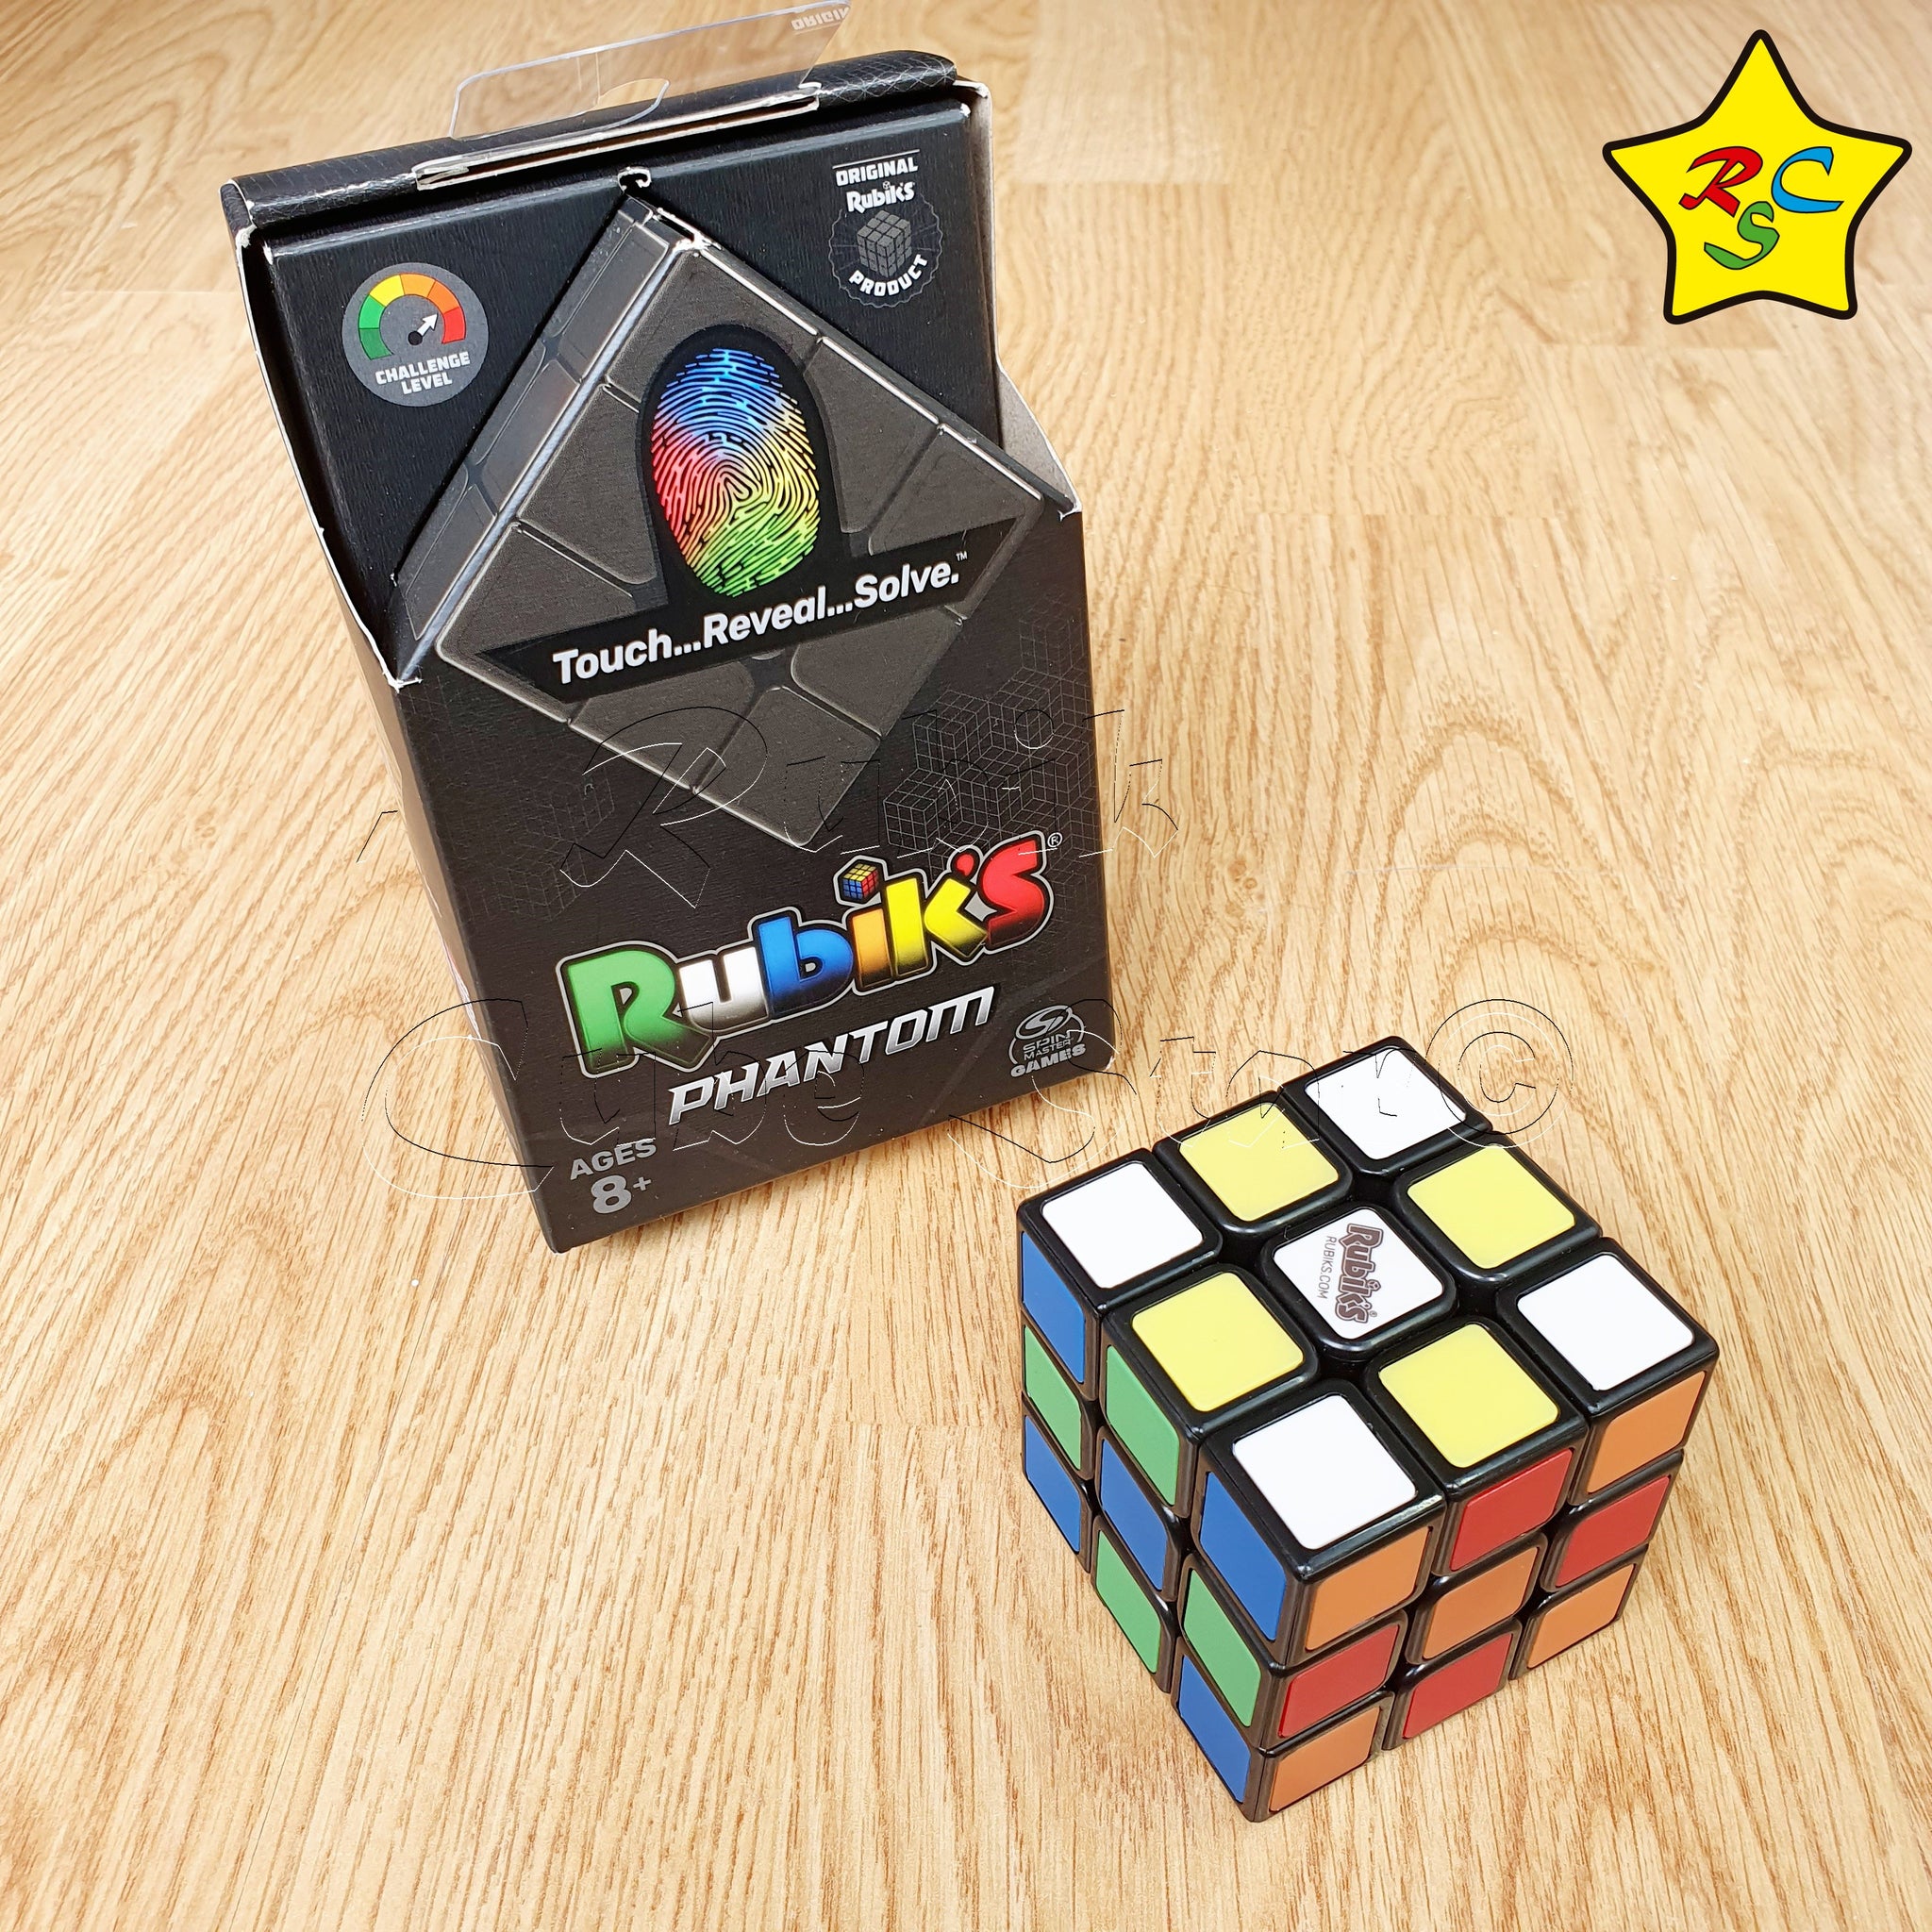 Imagenes De Cubos Rubik Cubo Rubik's 3x3 Phantom Hasbro Original Fantasma Color – Rubik Cube Star